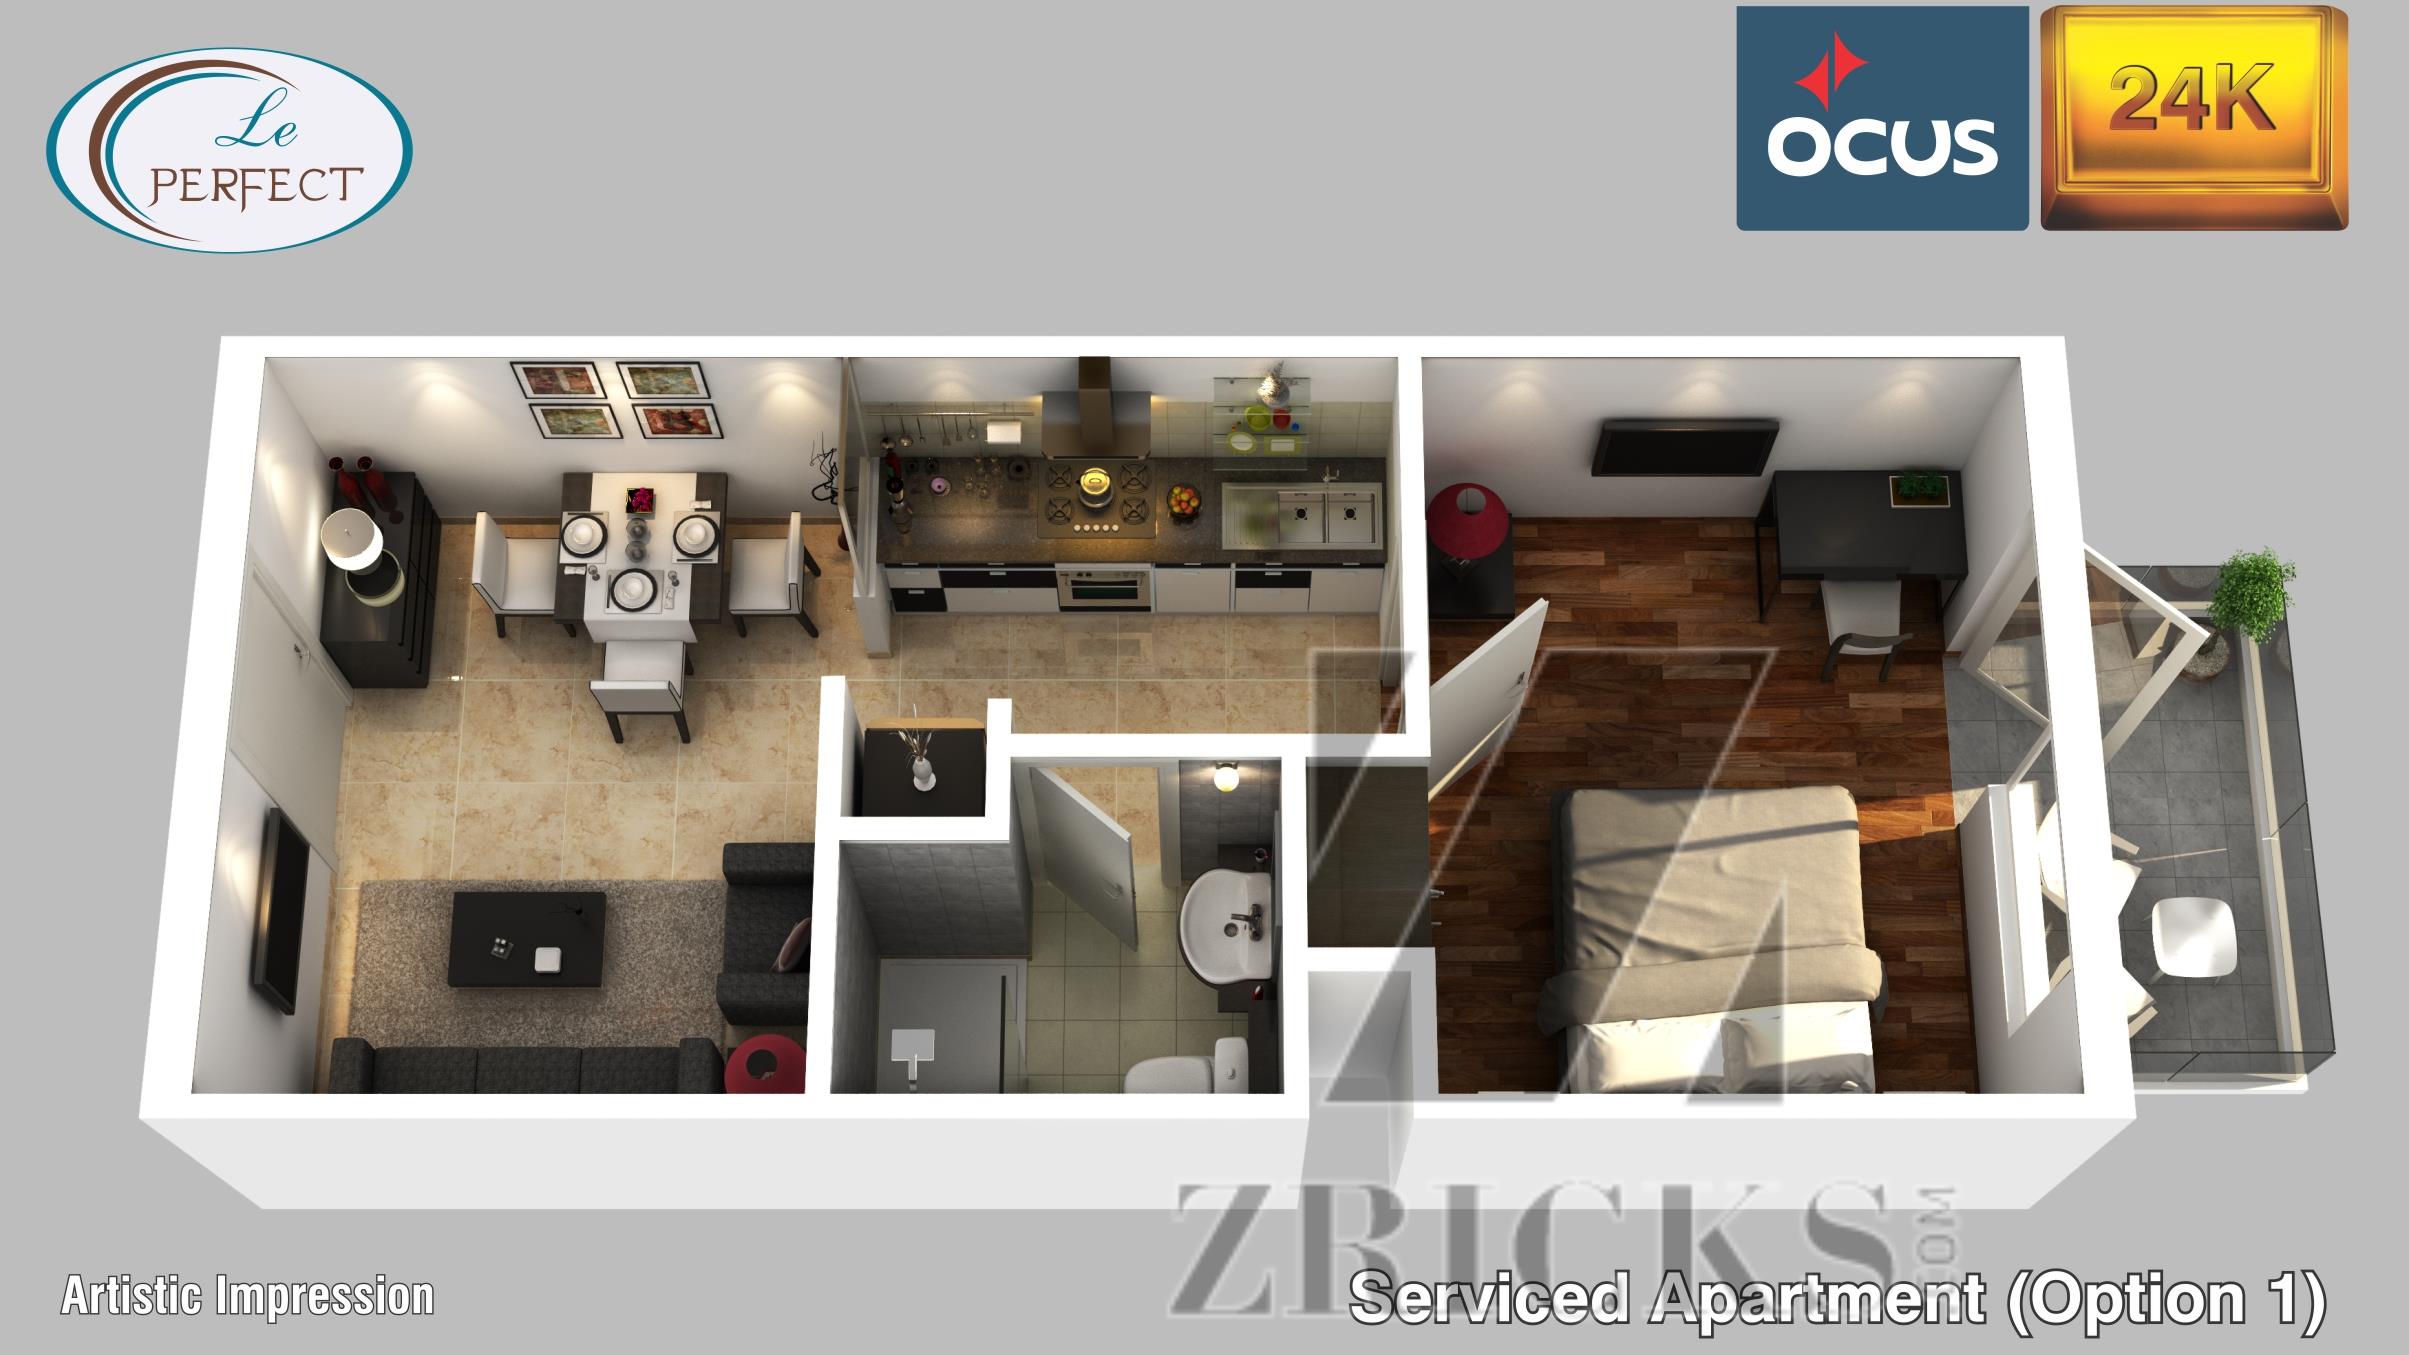 Ocus 24K Floor Plan